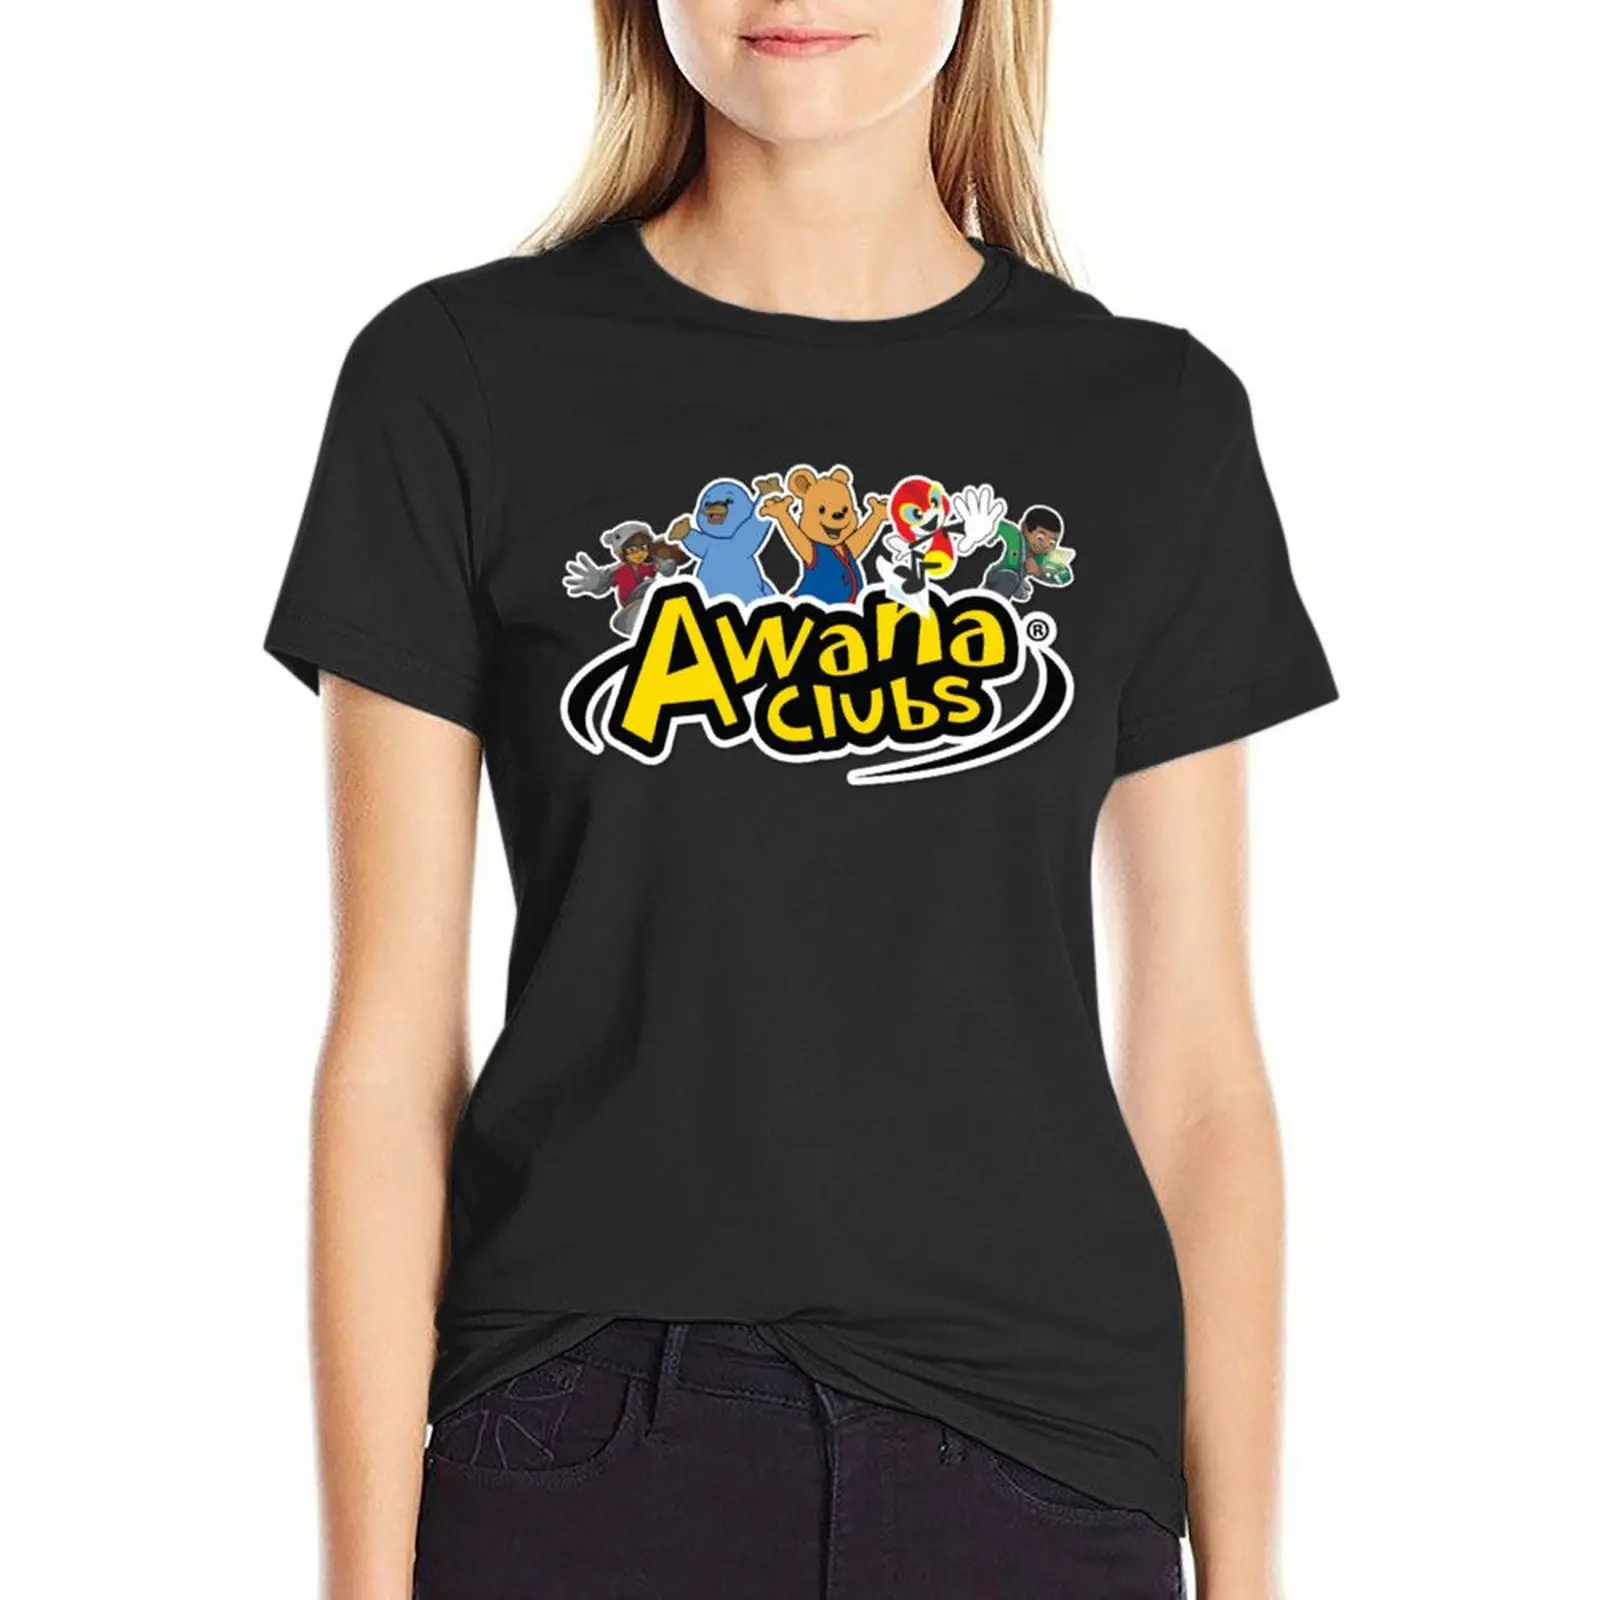 

Awana Clubs Official T-shirt tees Short sleeve tee plus size tops Women's cotton t-shirt